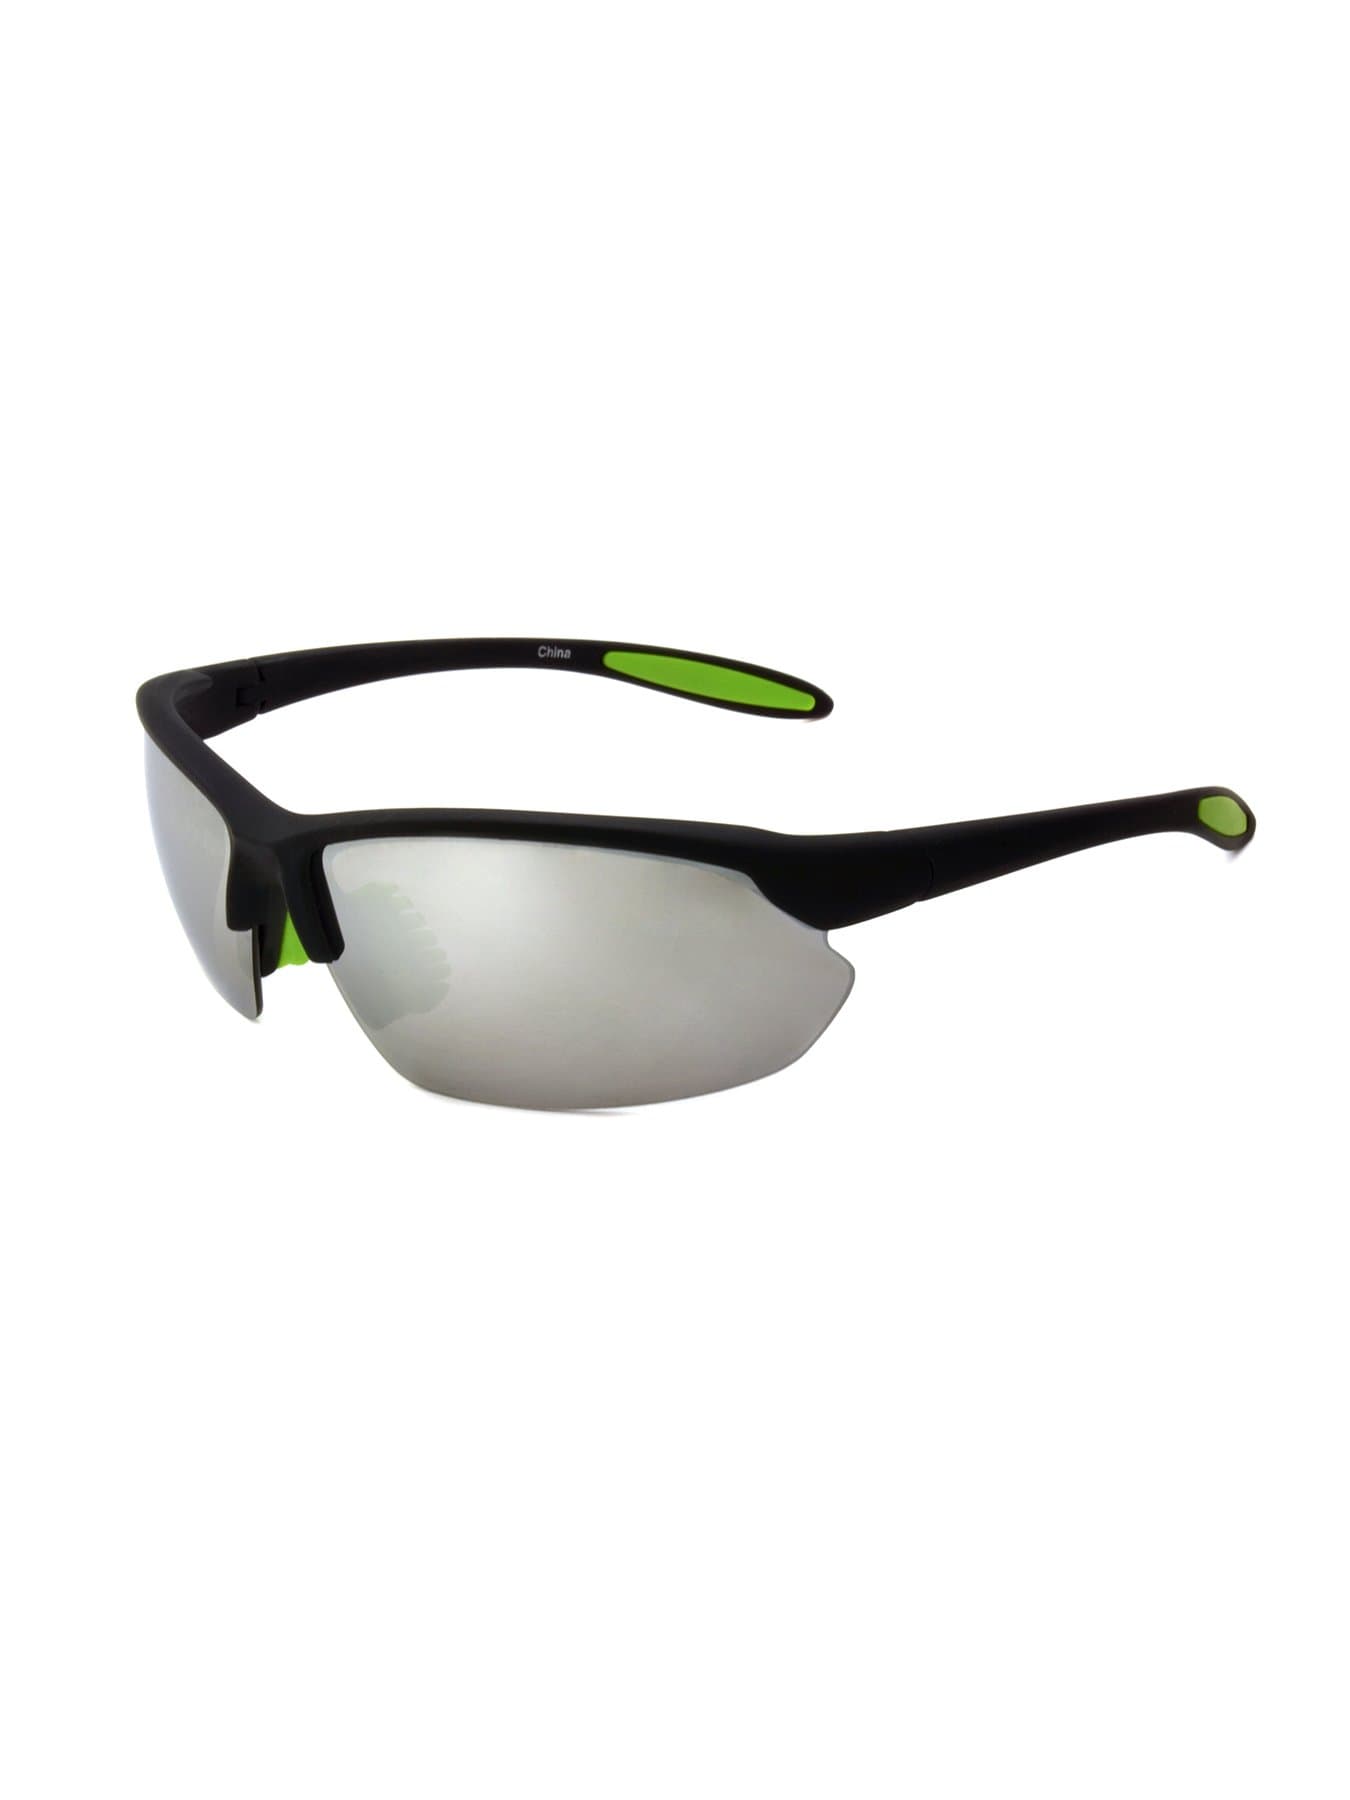 PGA TOUR Apparel Mens Wrap Blade Sunglasses, Gray | Golf Apparel Shop